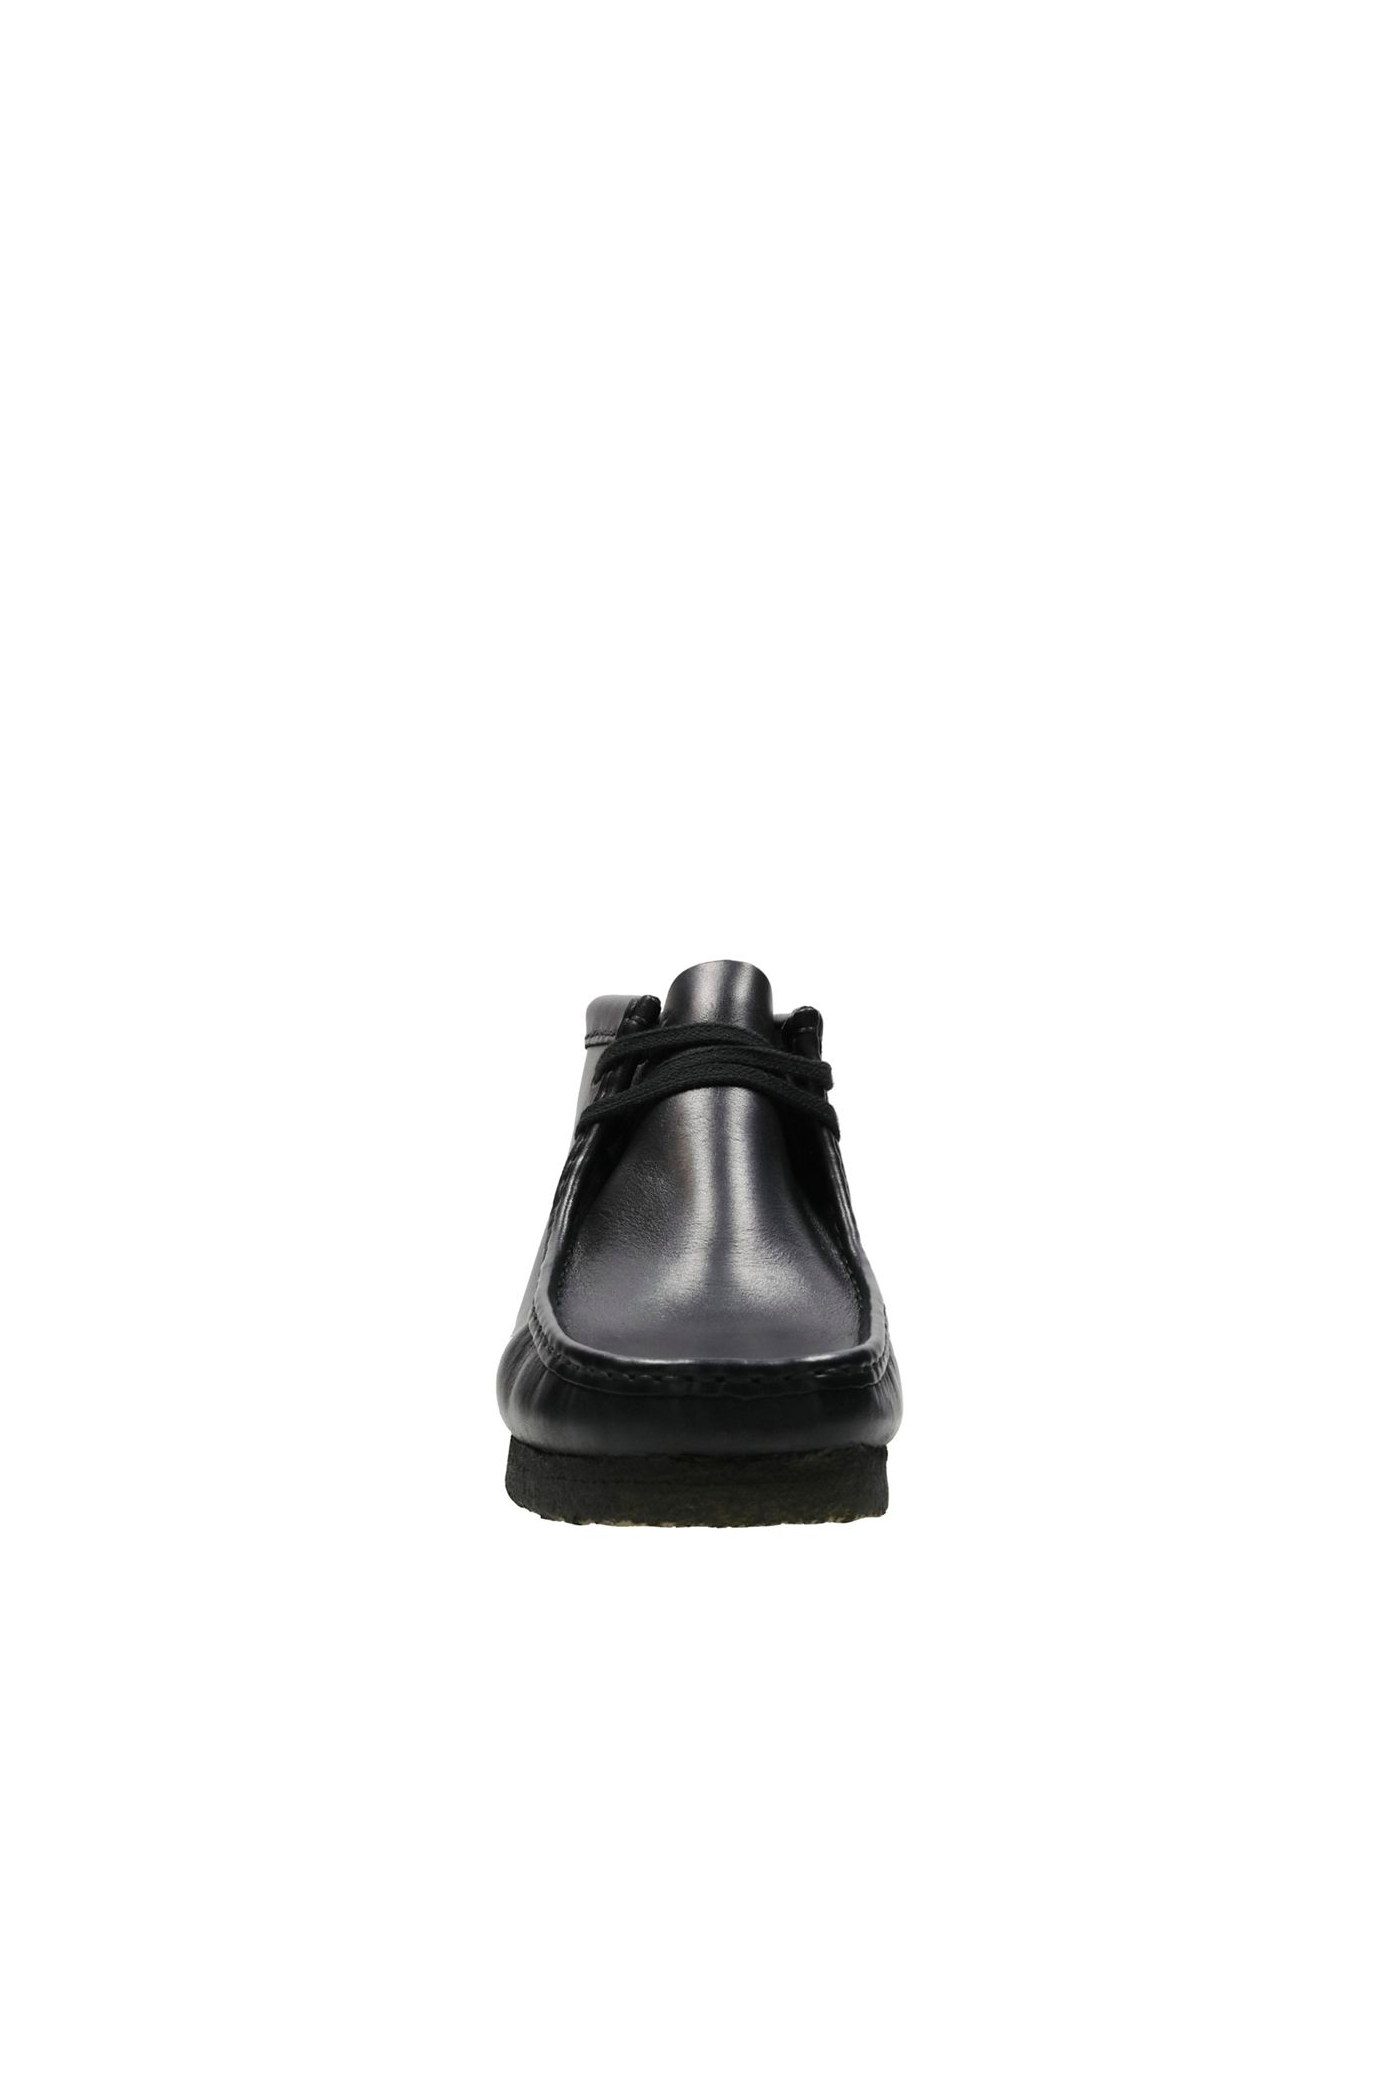 Men's Clarks Originals Wallabee Boot in Black Leather